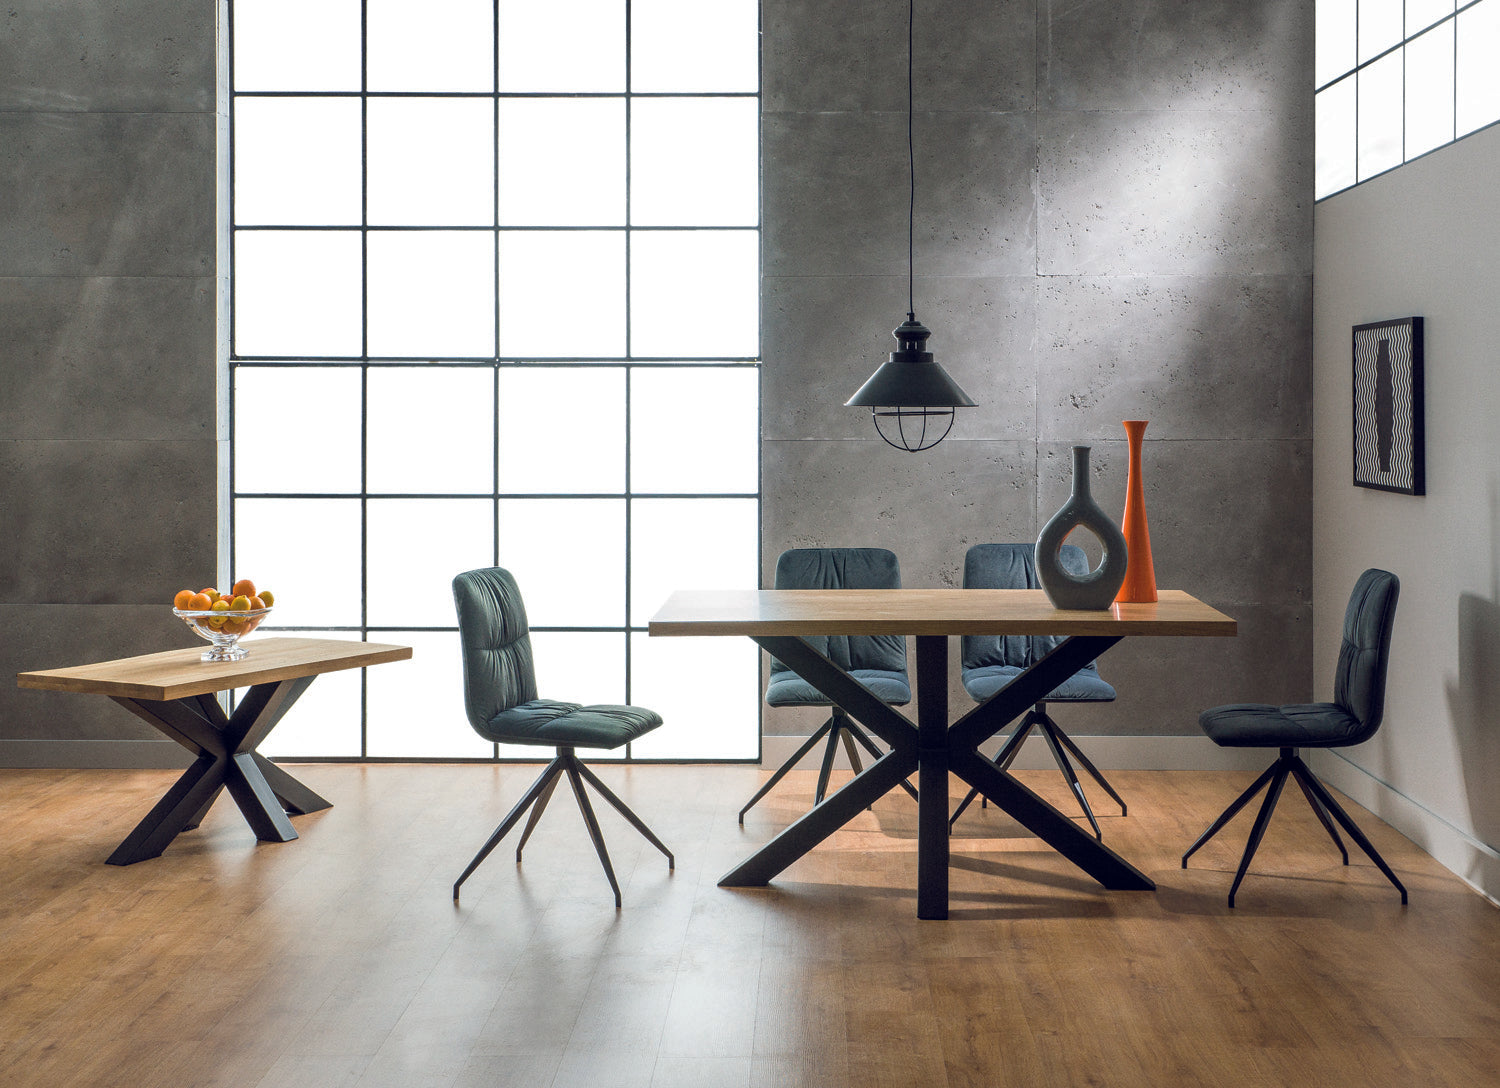 Hattie asztal, 180 x 90 cm - Marco Mobili Bútoráruház - Étkezőasztal